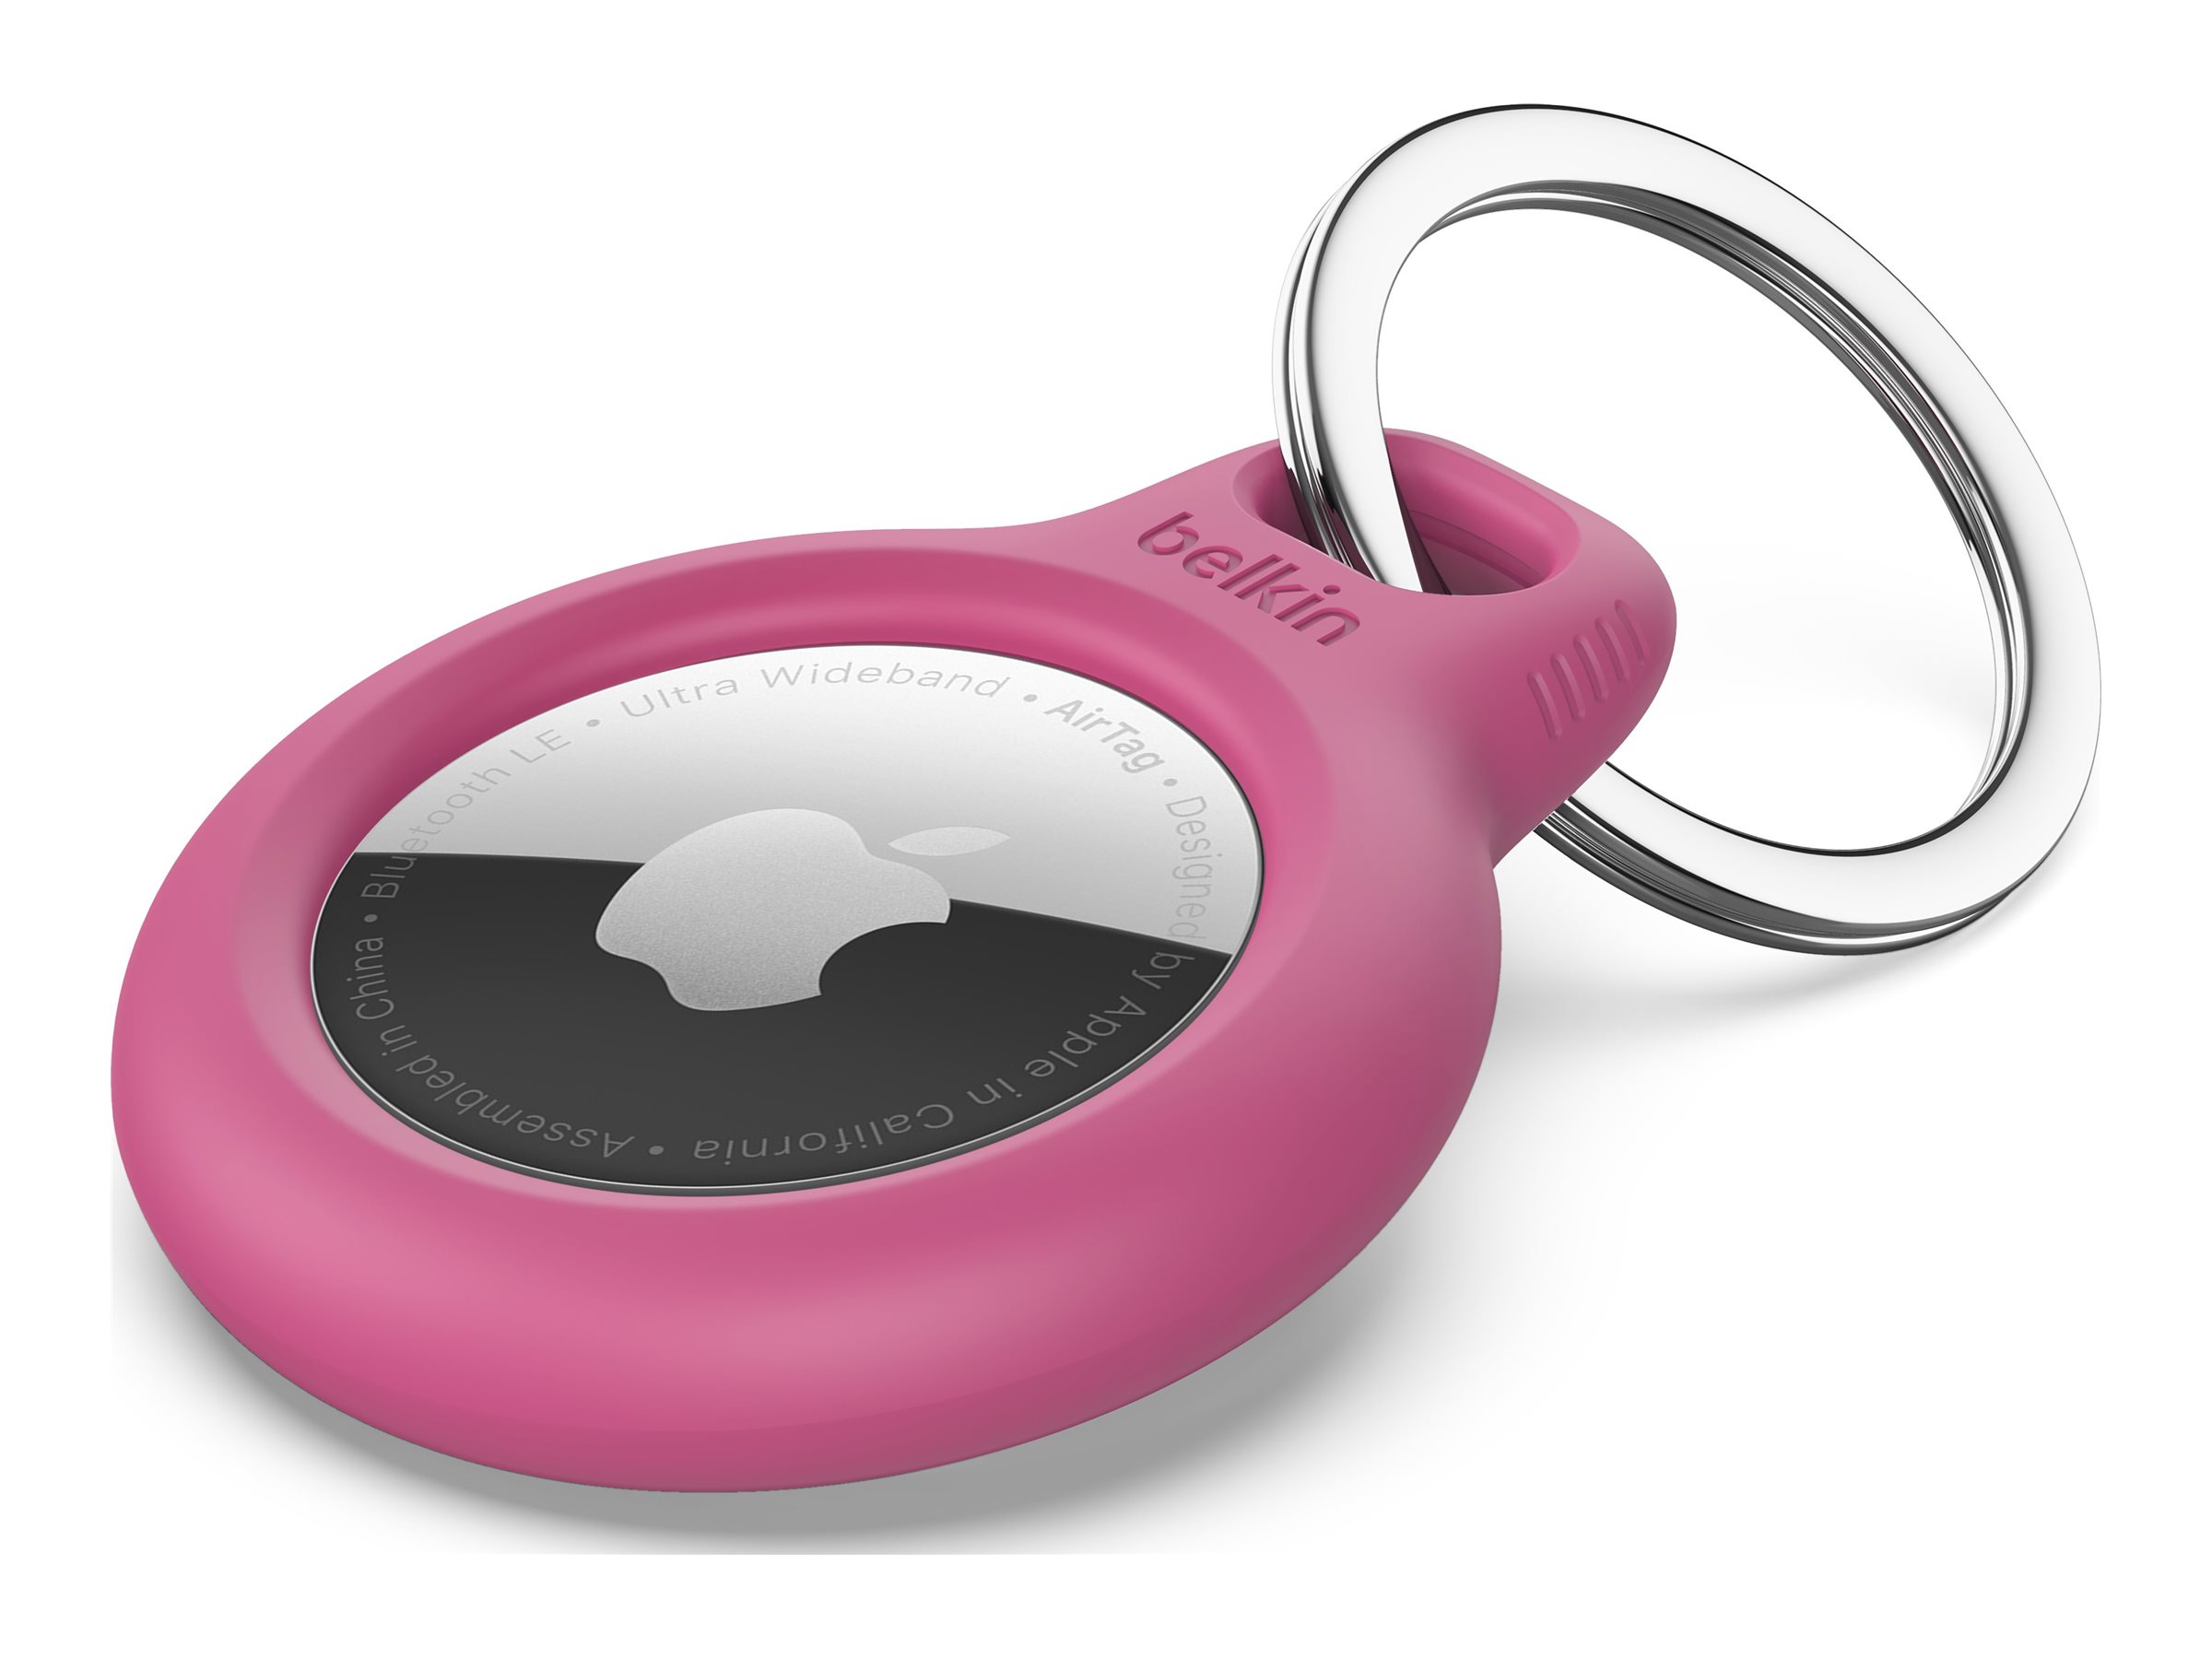 Belkin - Support sécurisé pour étiquette Bluetooth anti-perte - rose - pour Apple AirTag - F8W973BTPNK - accessoires divers